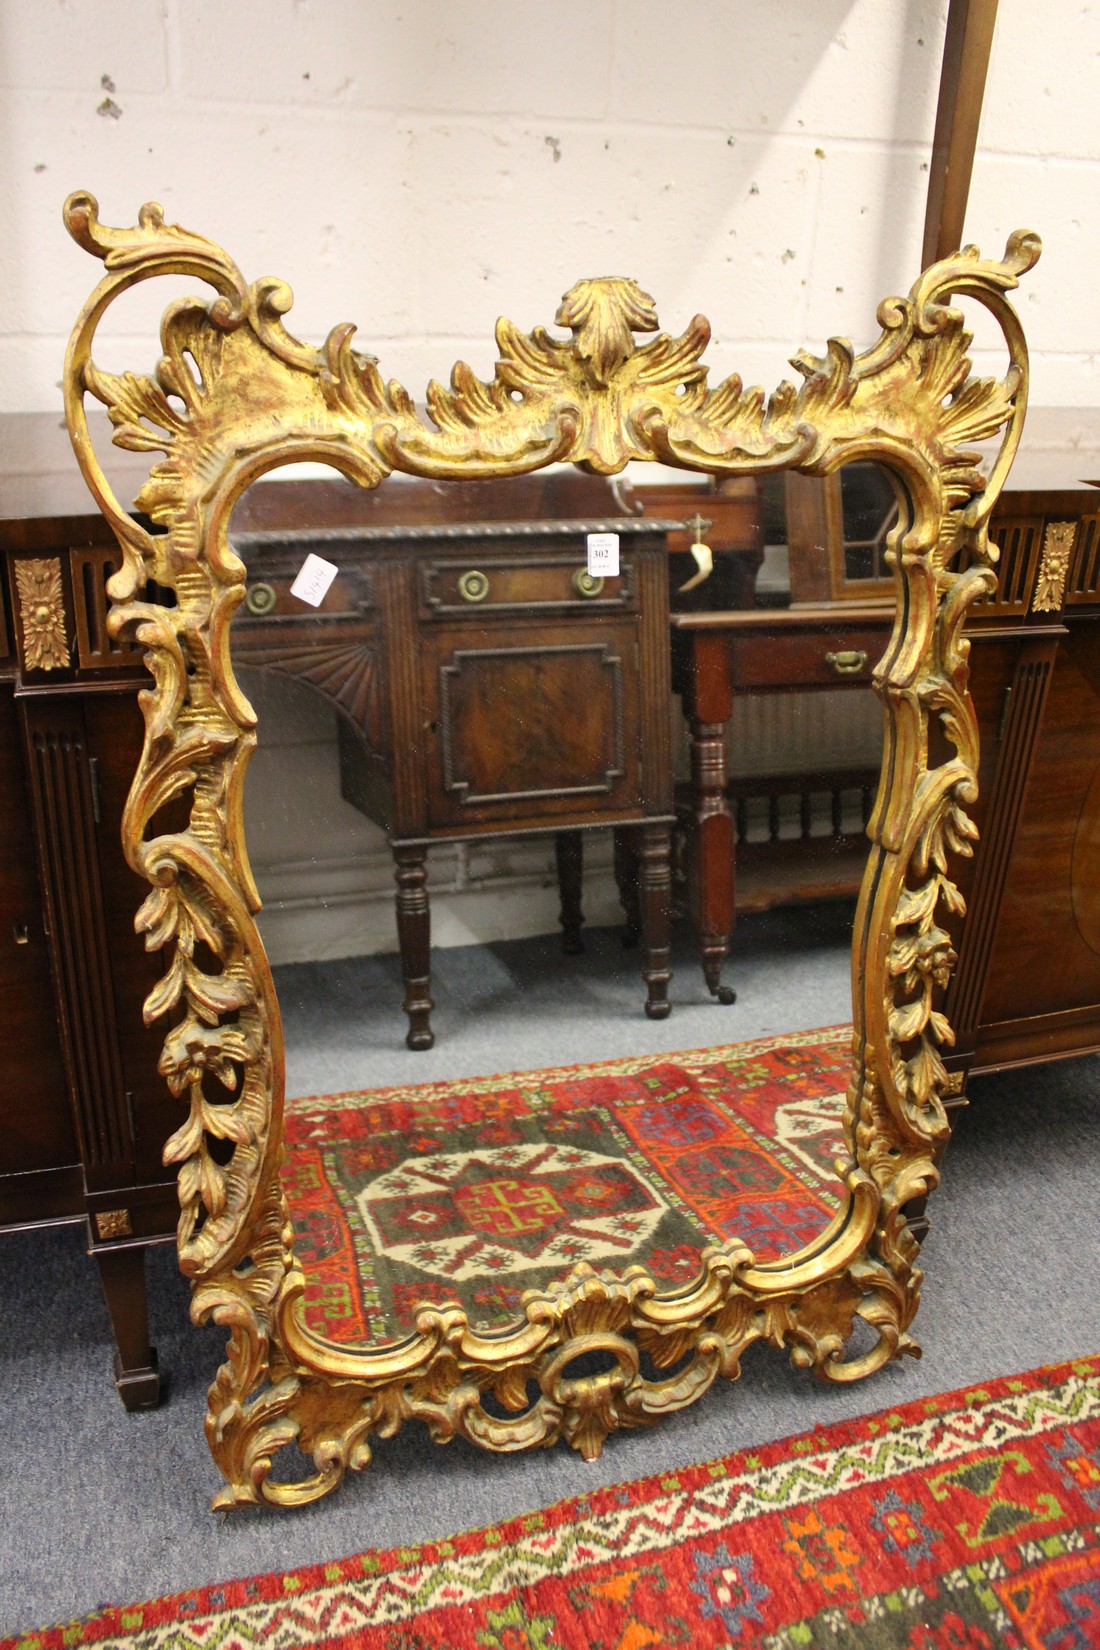 An 18th / 19th century giltwood pier mirror.